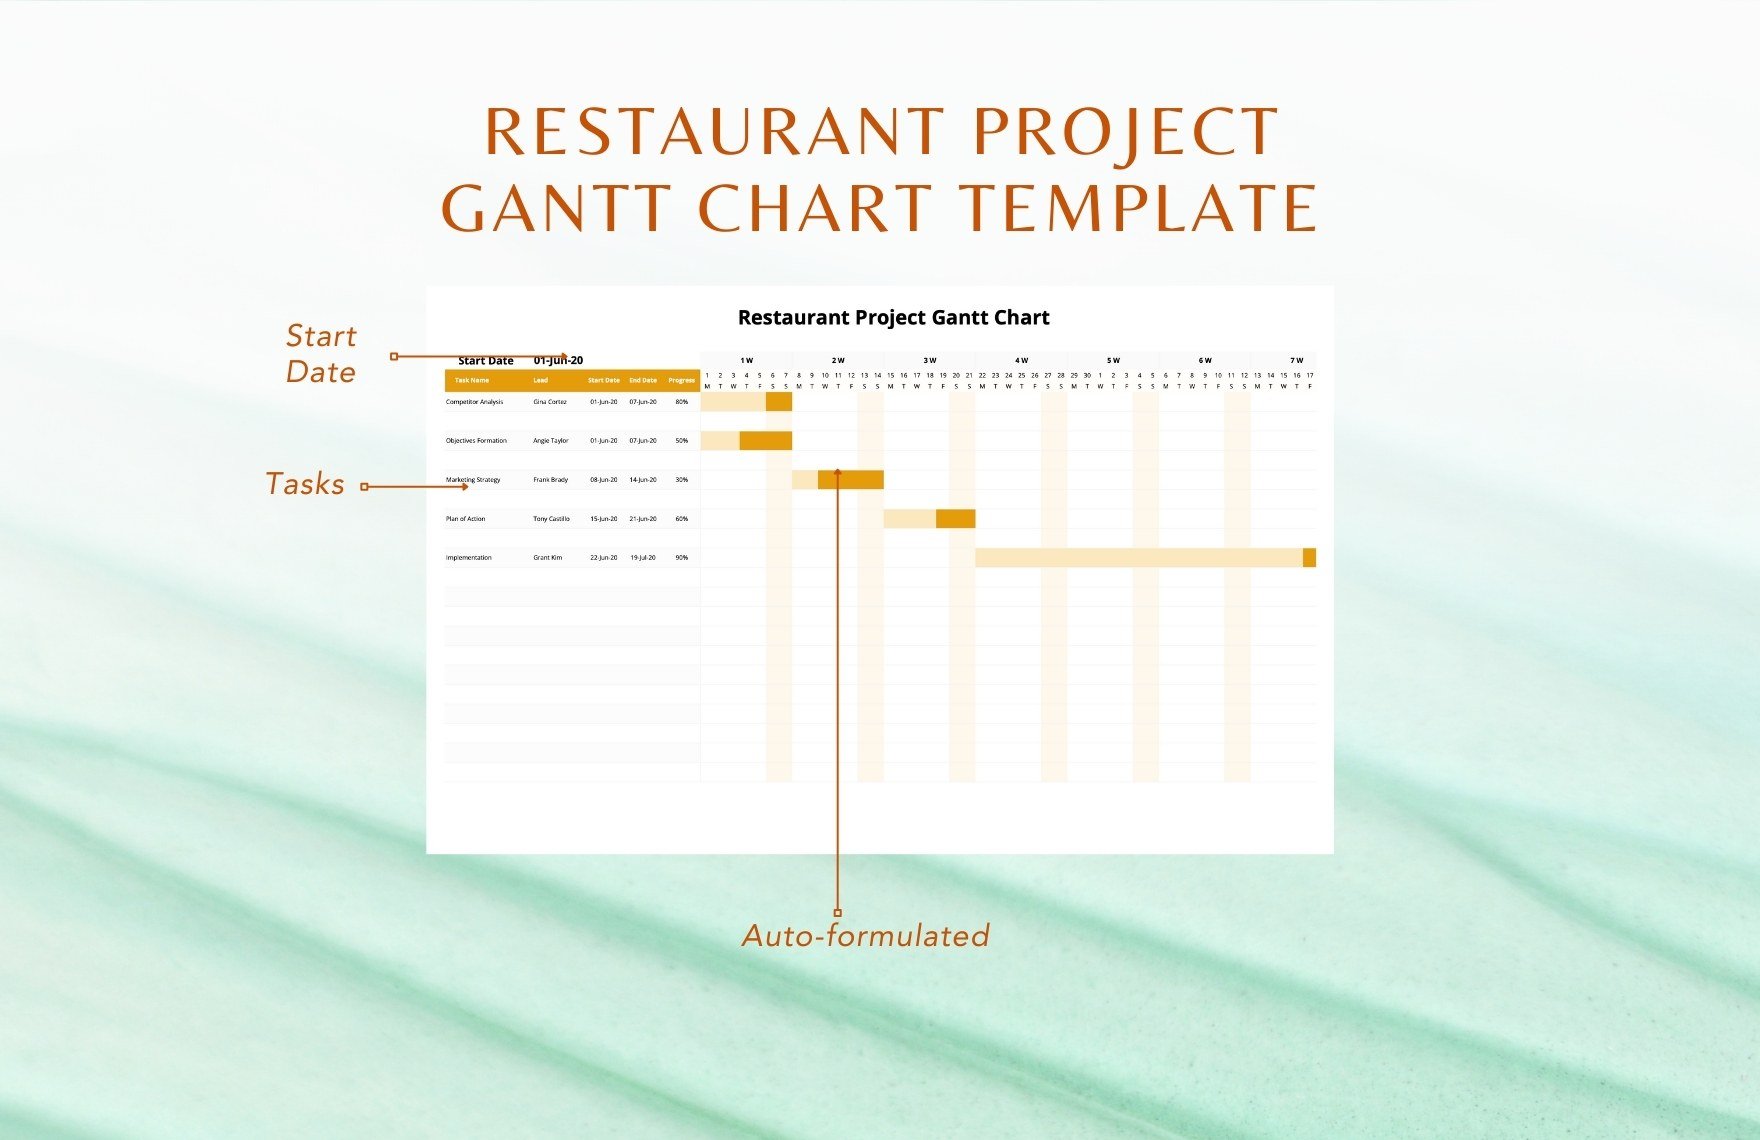 Restaurant Project Gantt Chart Template